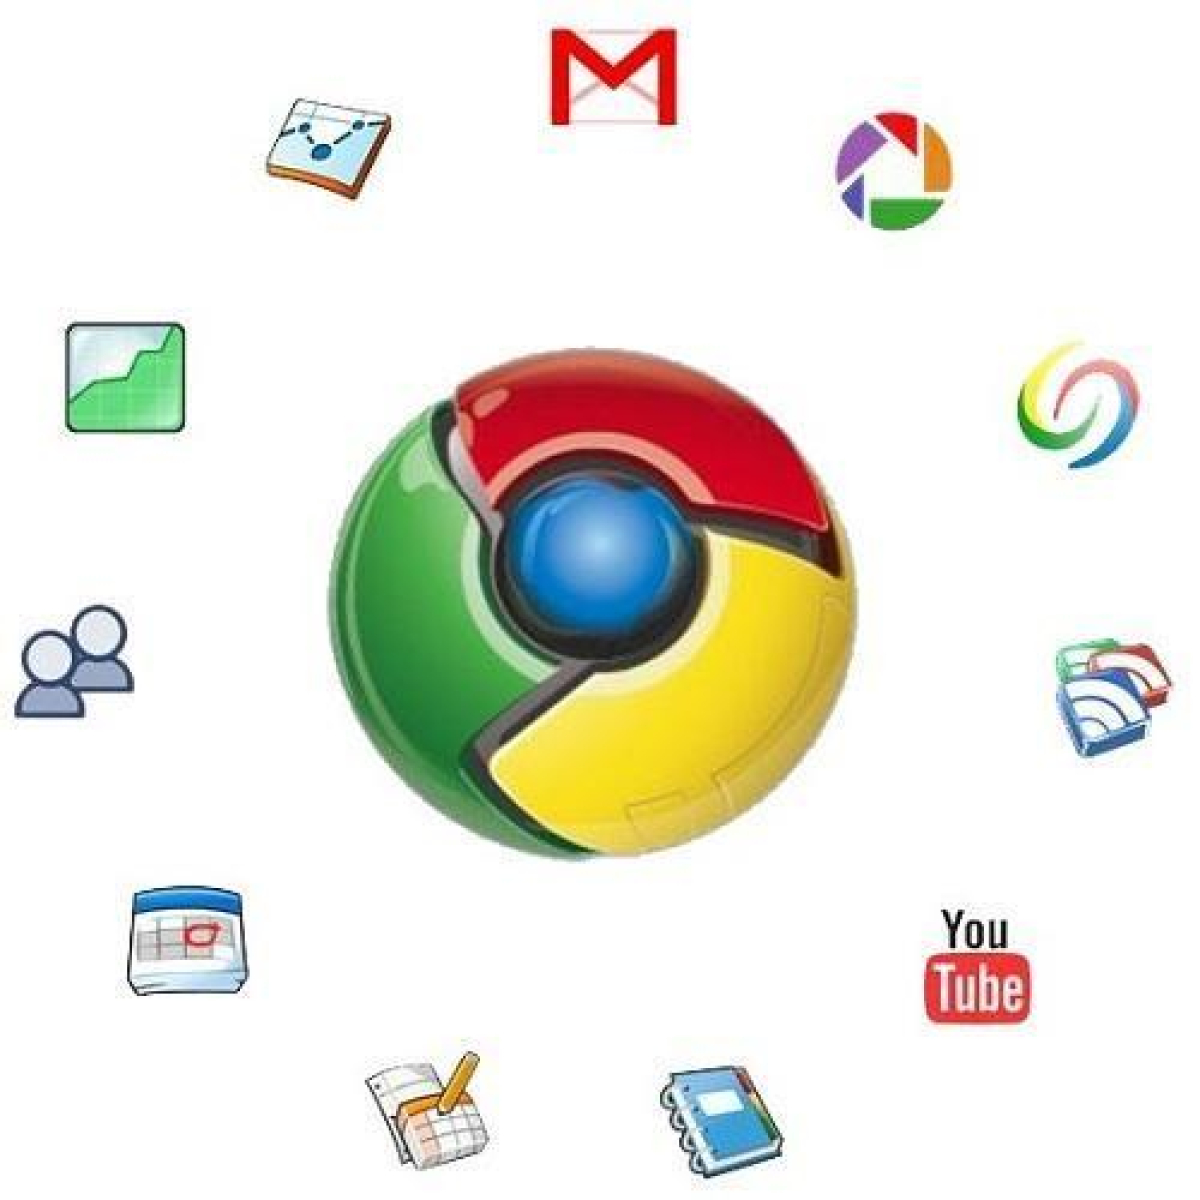 5 extensiones útiles para Google Chrome